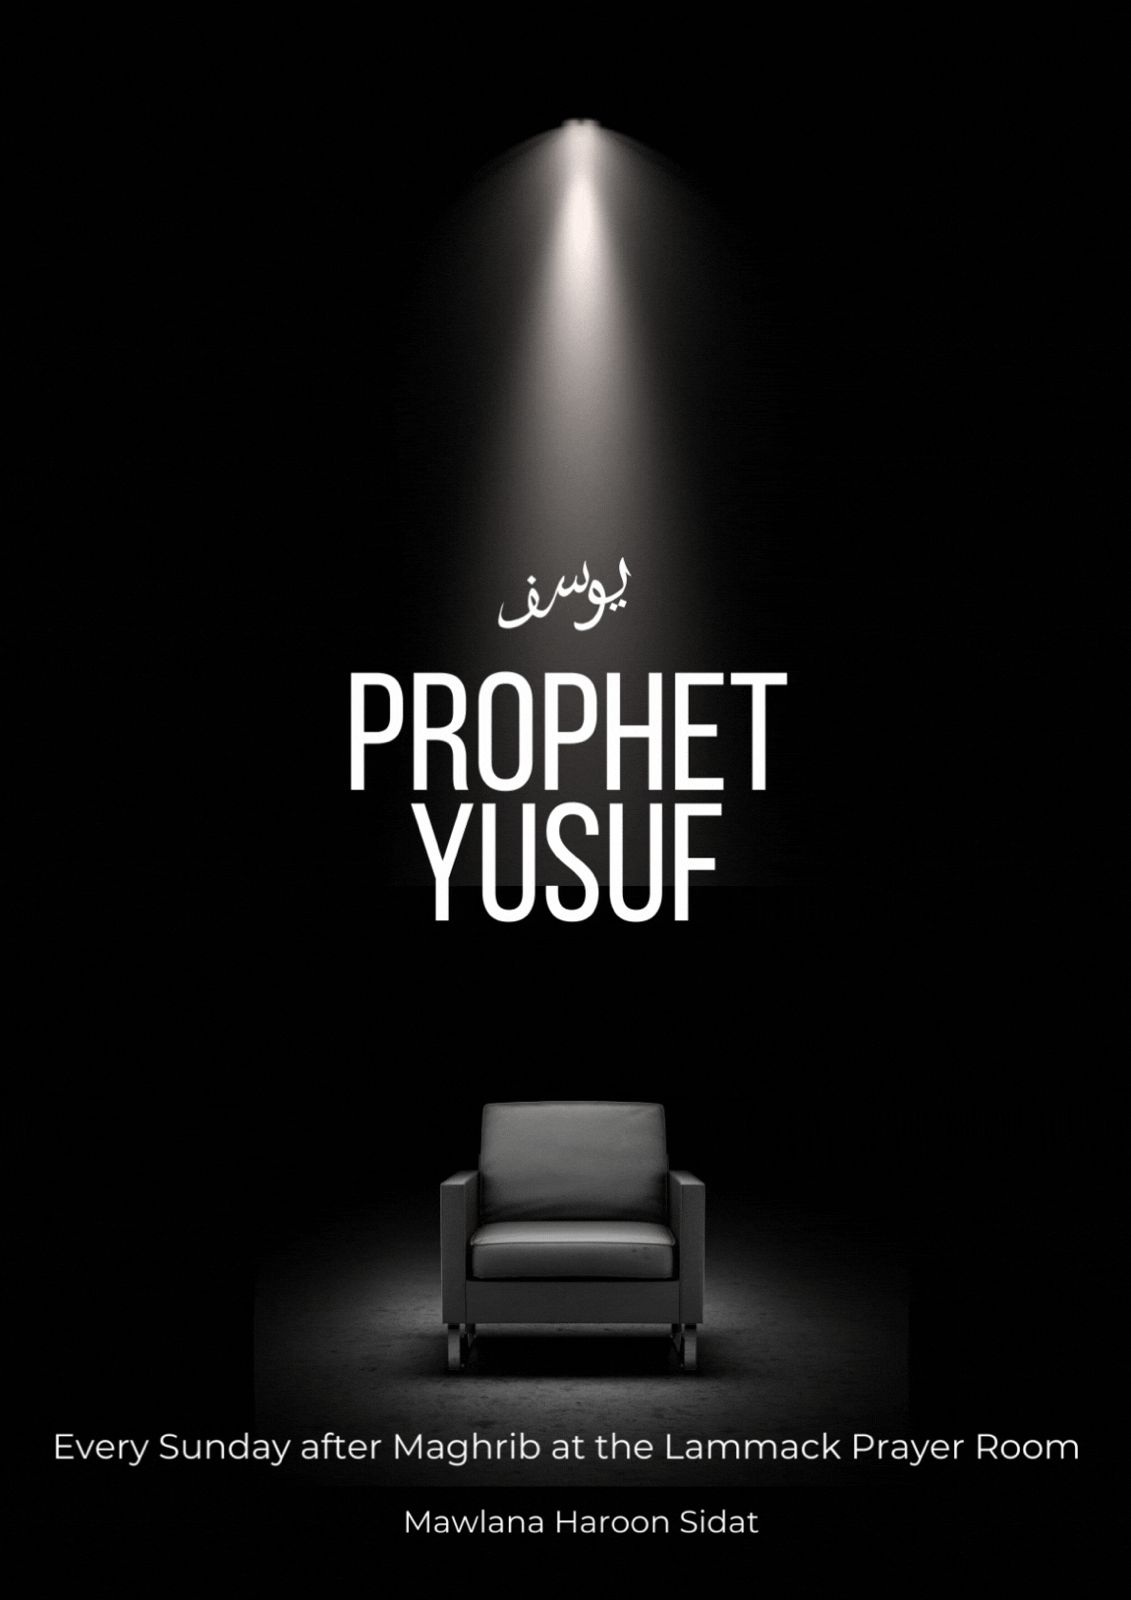 Prophet Yusuf AS by Mawlana Haroon Sidat